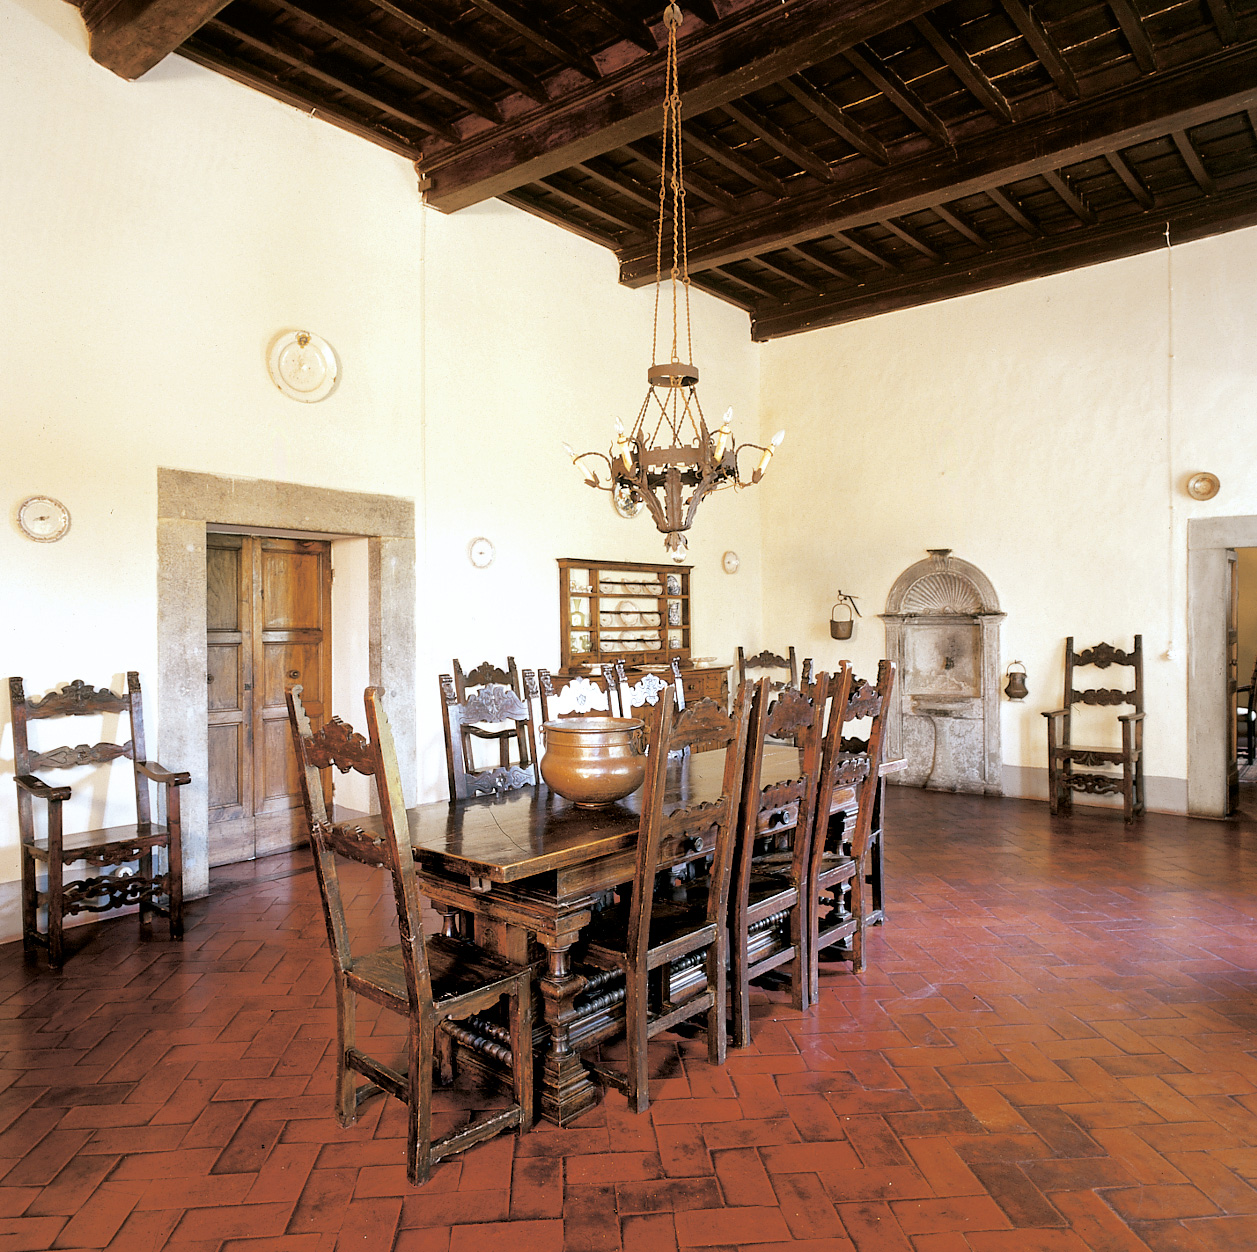 Villa Montesiro on X: Tra i saldi Thun trovi le originali bilance che  rallegreranno la tua cucina, e indispensabili per preparare le tue ricette  preferite. #villamontesiro #thun  / X